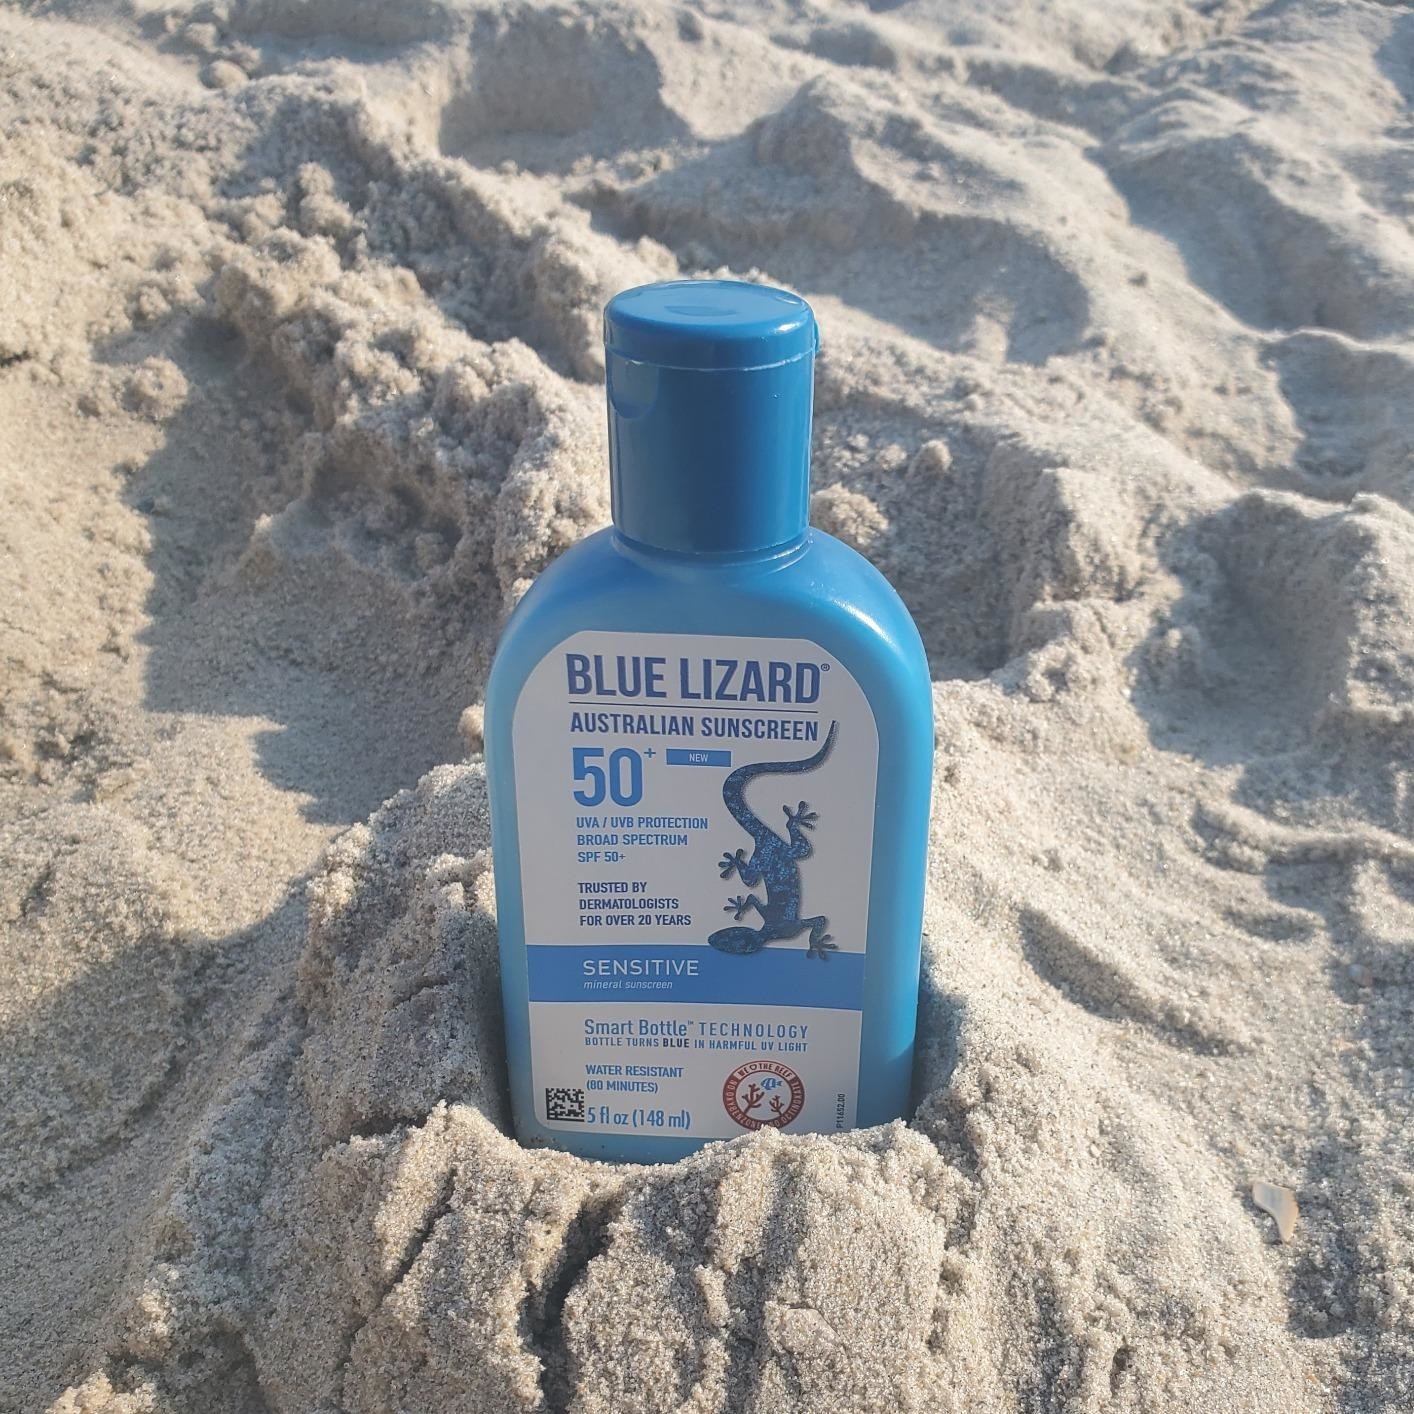 a bottle of blue lizard sunscreen